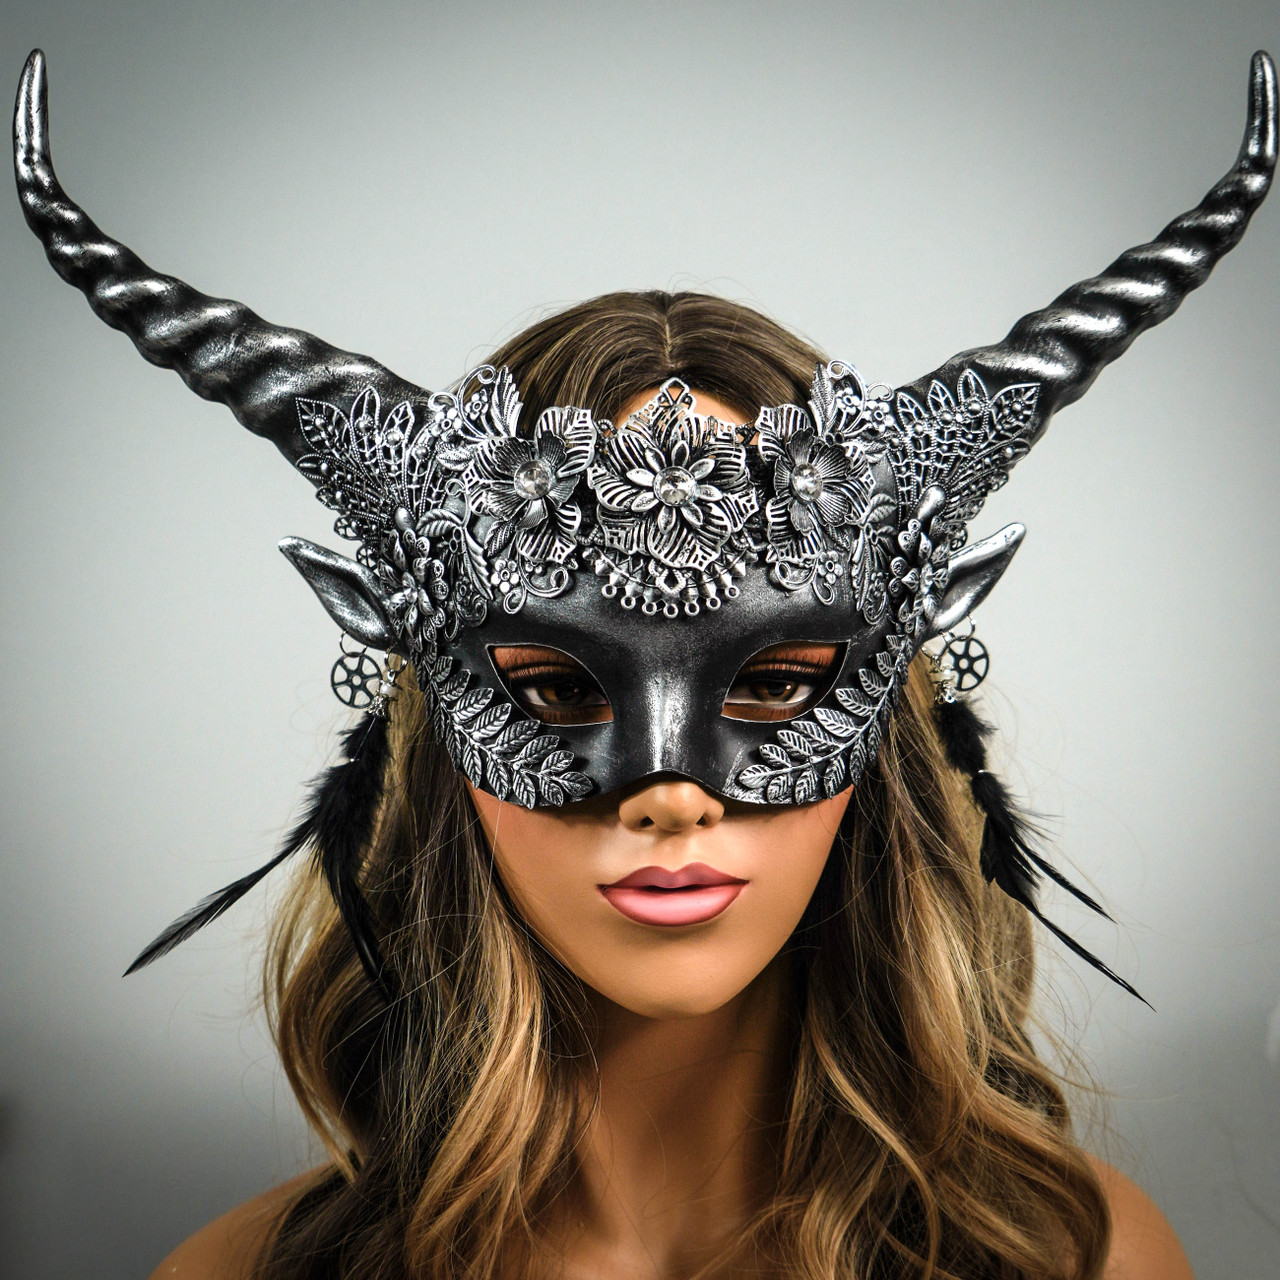 periskop uudgrundelig sand New Ram Masquerade Masks Burning Man Face Mask USA Free Shipping